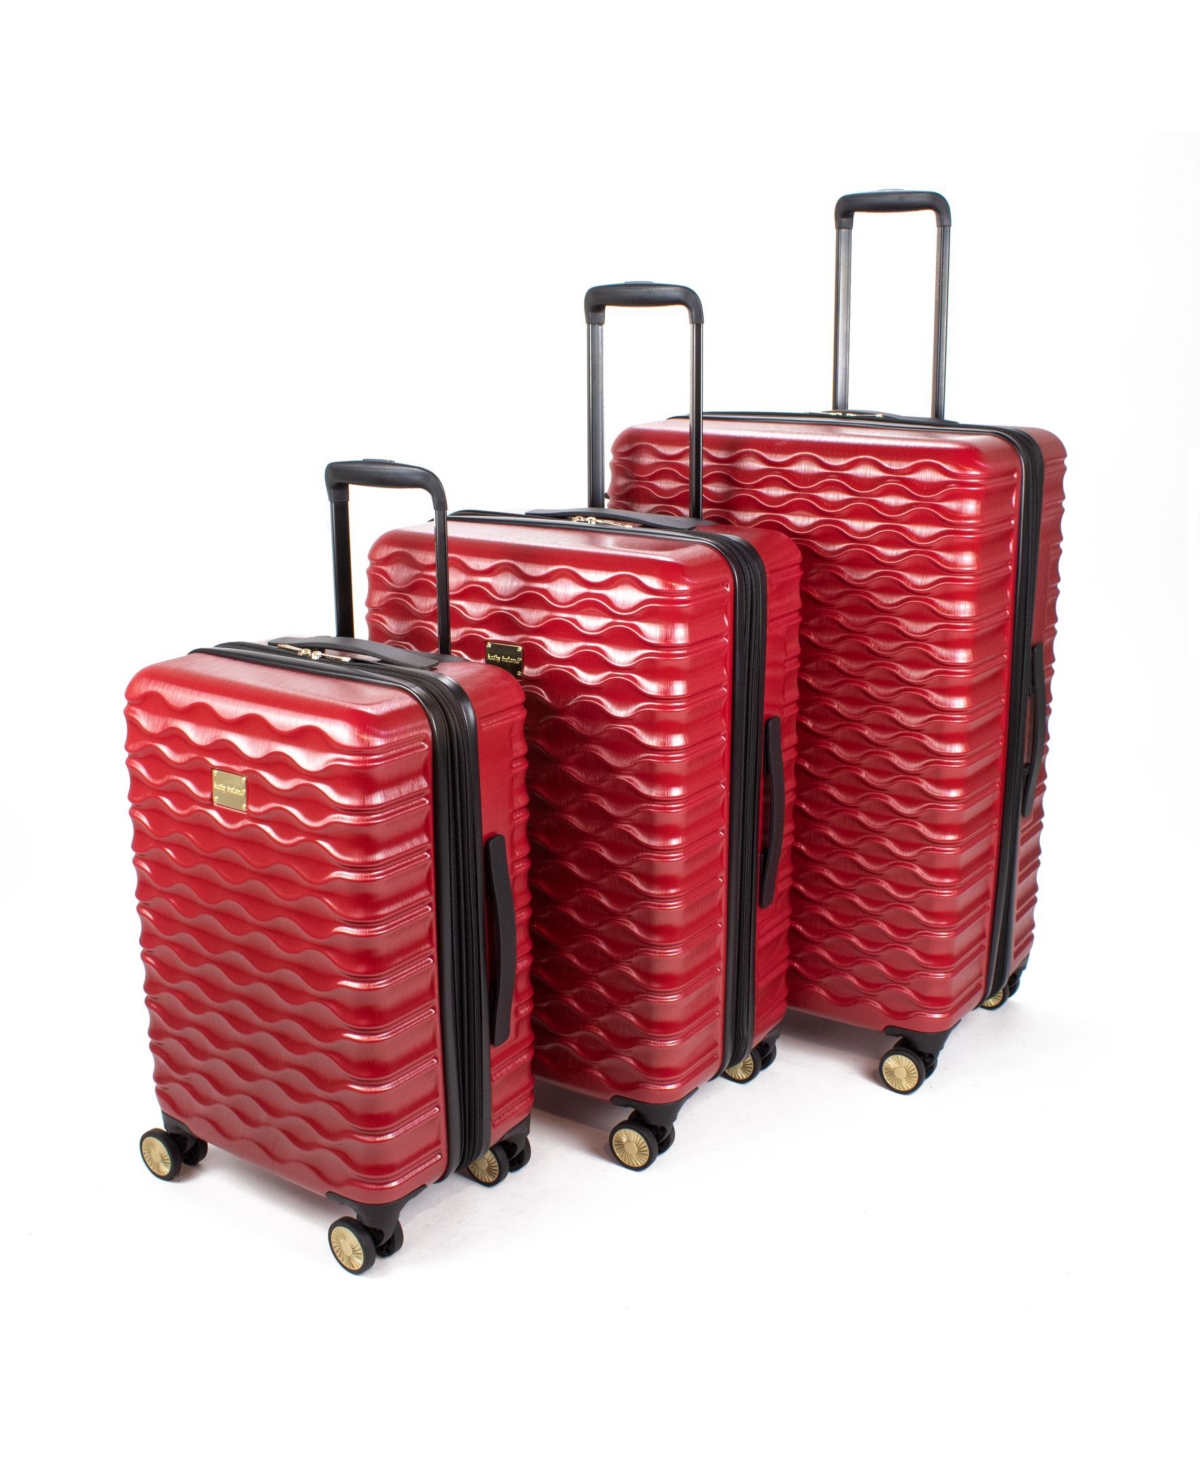 Maisy Hardside Luggage Set, 3 Piece - Red